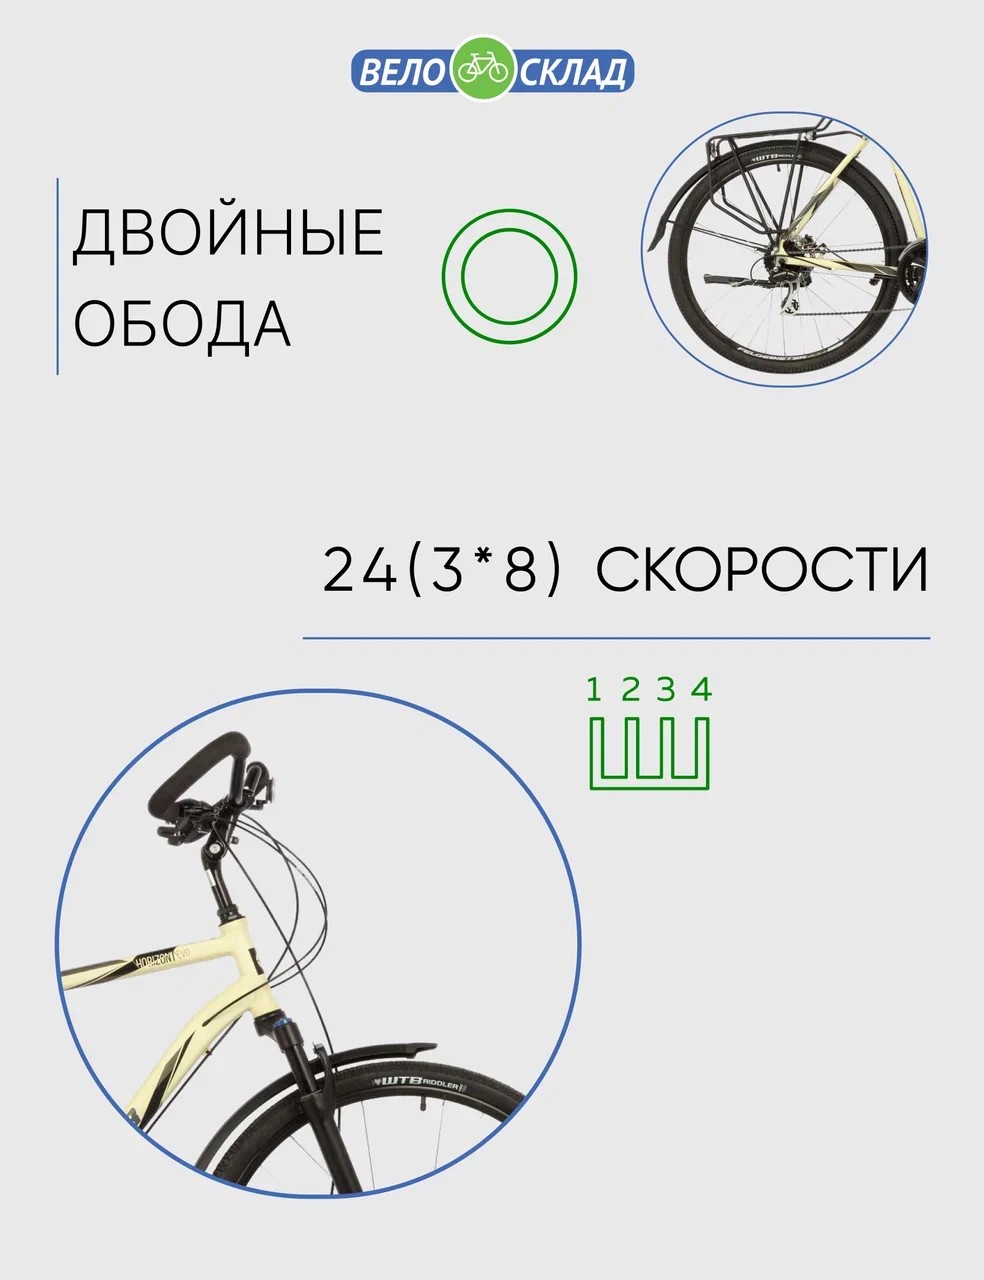 Дорожный велосипед Stinger Horizont Evo, год 2021, цвет Желтый, ростовка 22